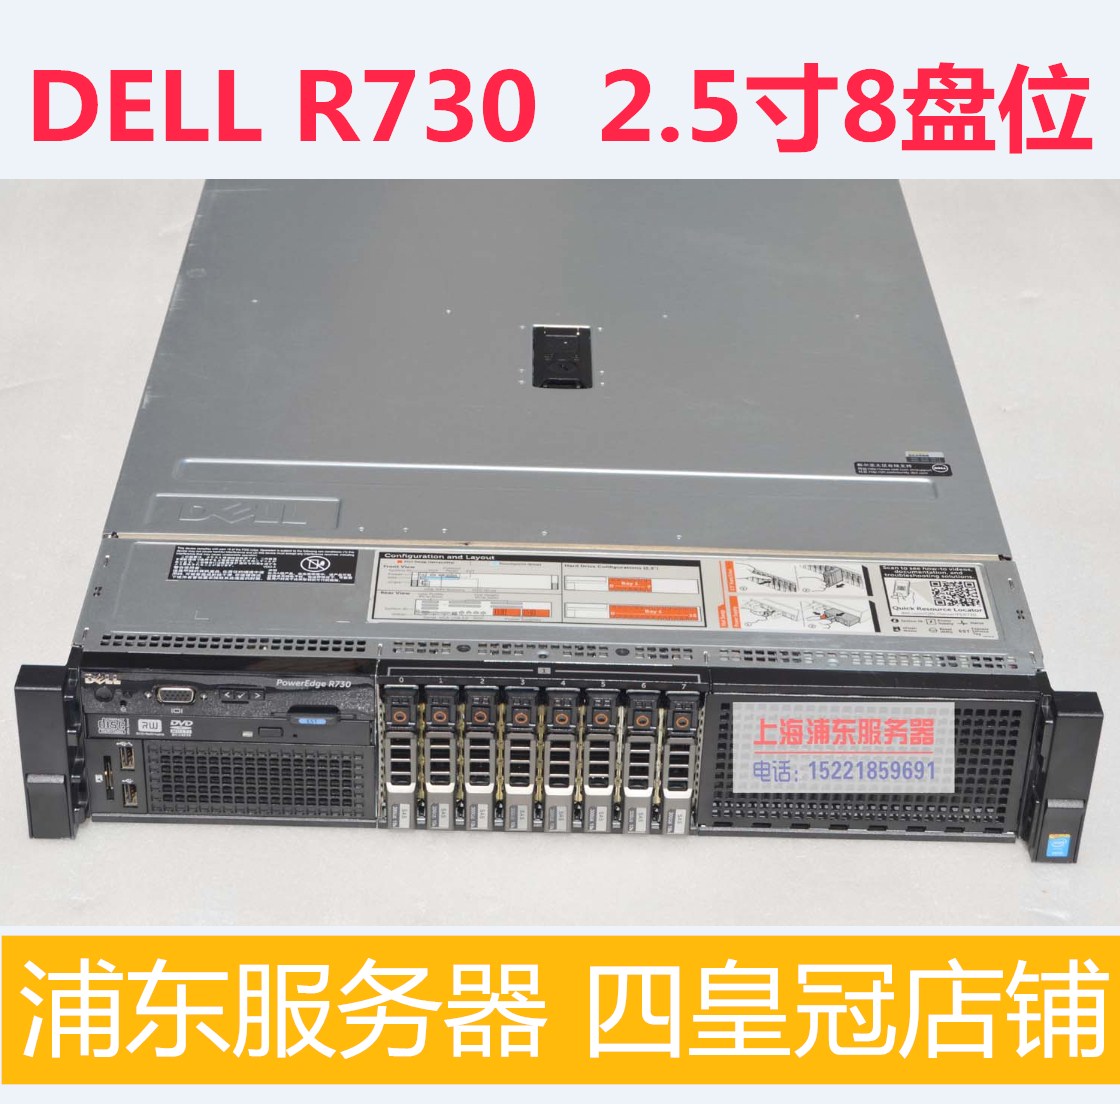 Five Crown Dell R730 は、デュアル グラフィックス カード サイレント DDR4 をサポートする新しい DELL サーバー ホスト ワークステーション